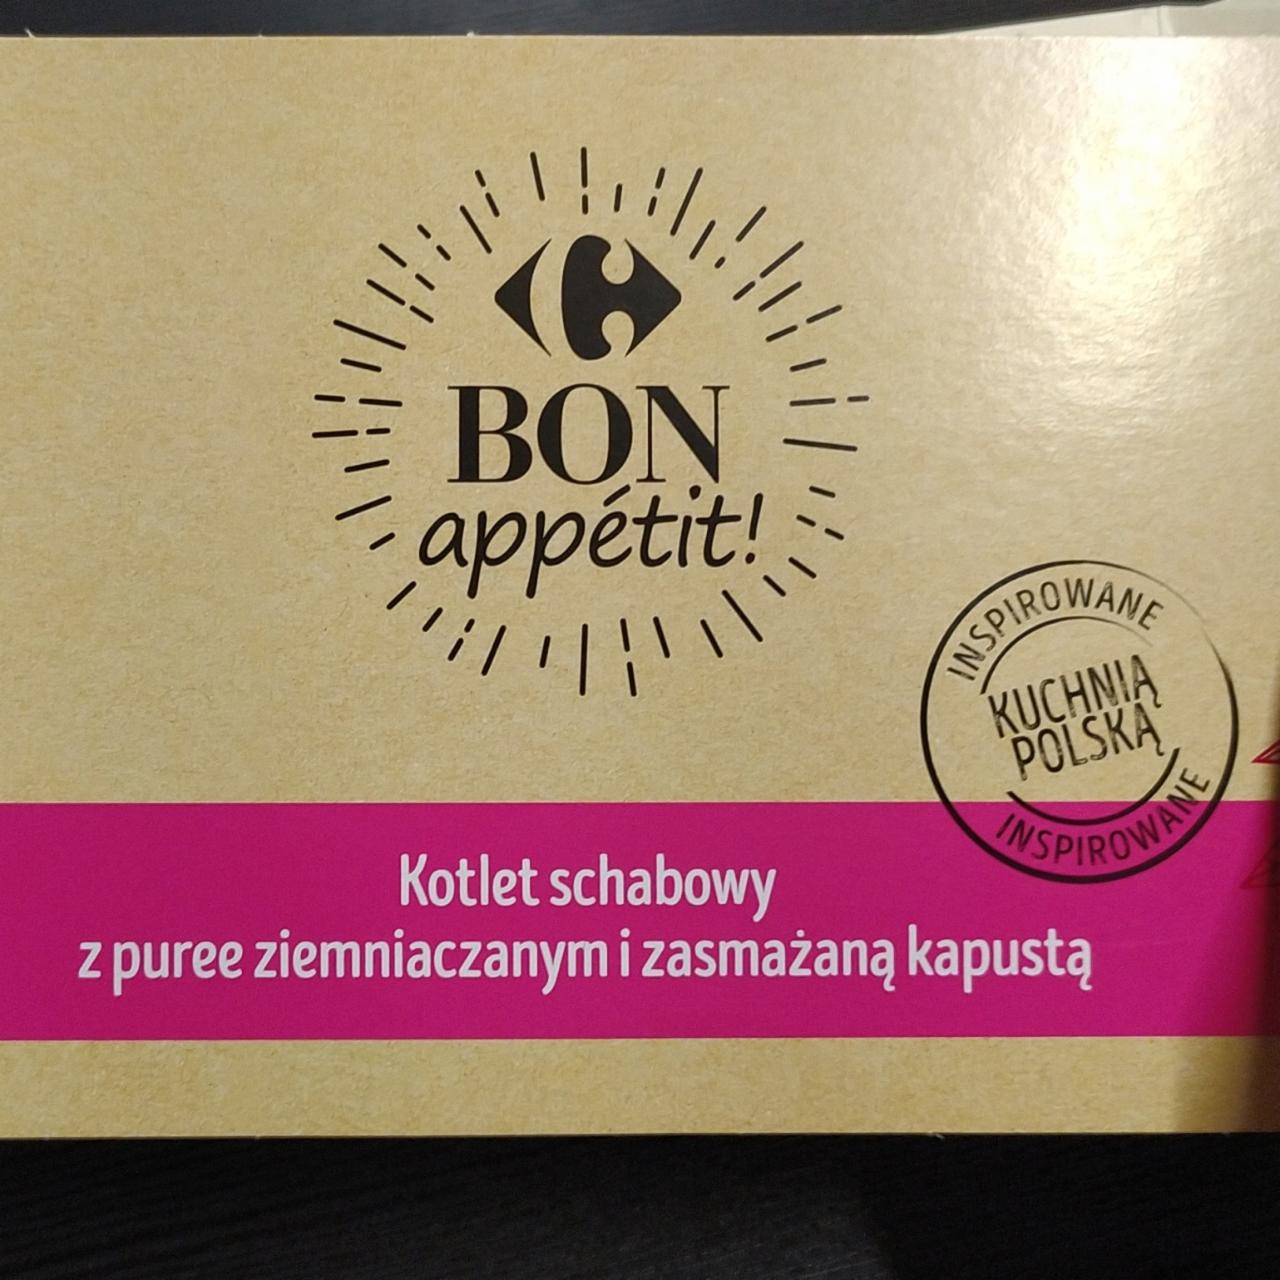 Фото - Kotlet schabowy z puree ziemniaczanym i zasmažana kapusta Bon appetit